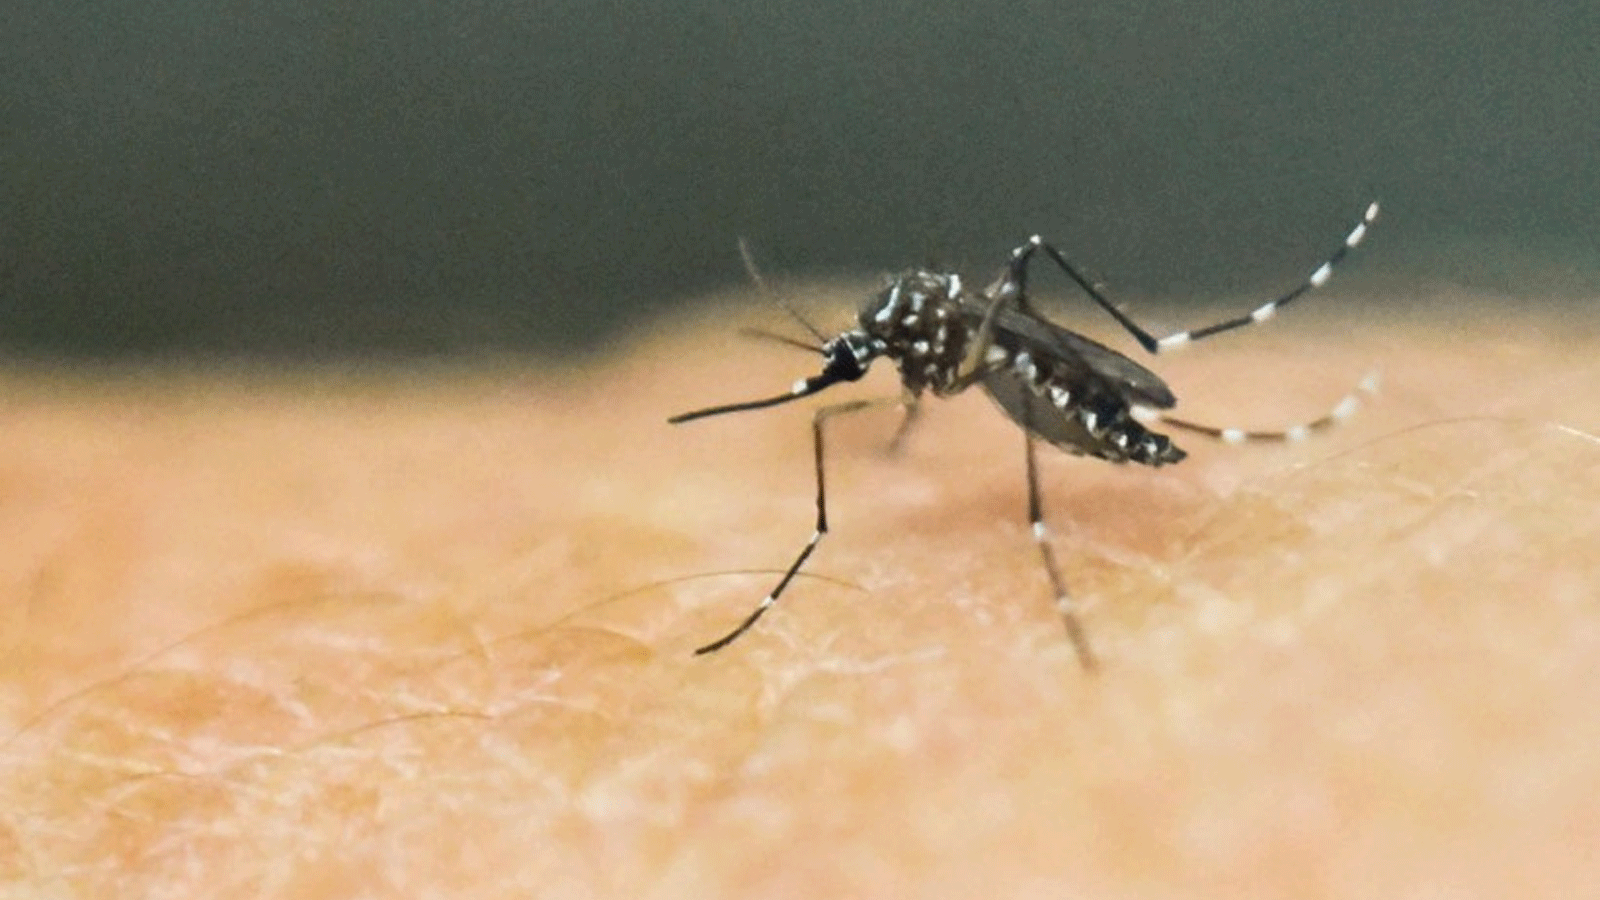 المراكز الأميركية لمكافحة الأمراض والوقاية منها (CDC) تُصدِر تنبيهًا بعد الإبلاغ عن خمس حالات ملاريا مكتسبة محليًا في فلوريدا وتكساس